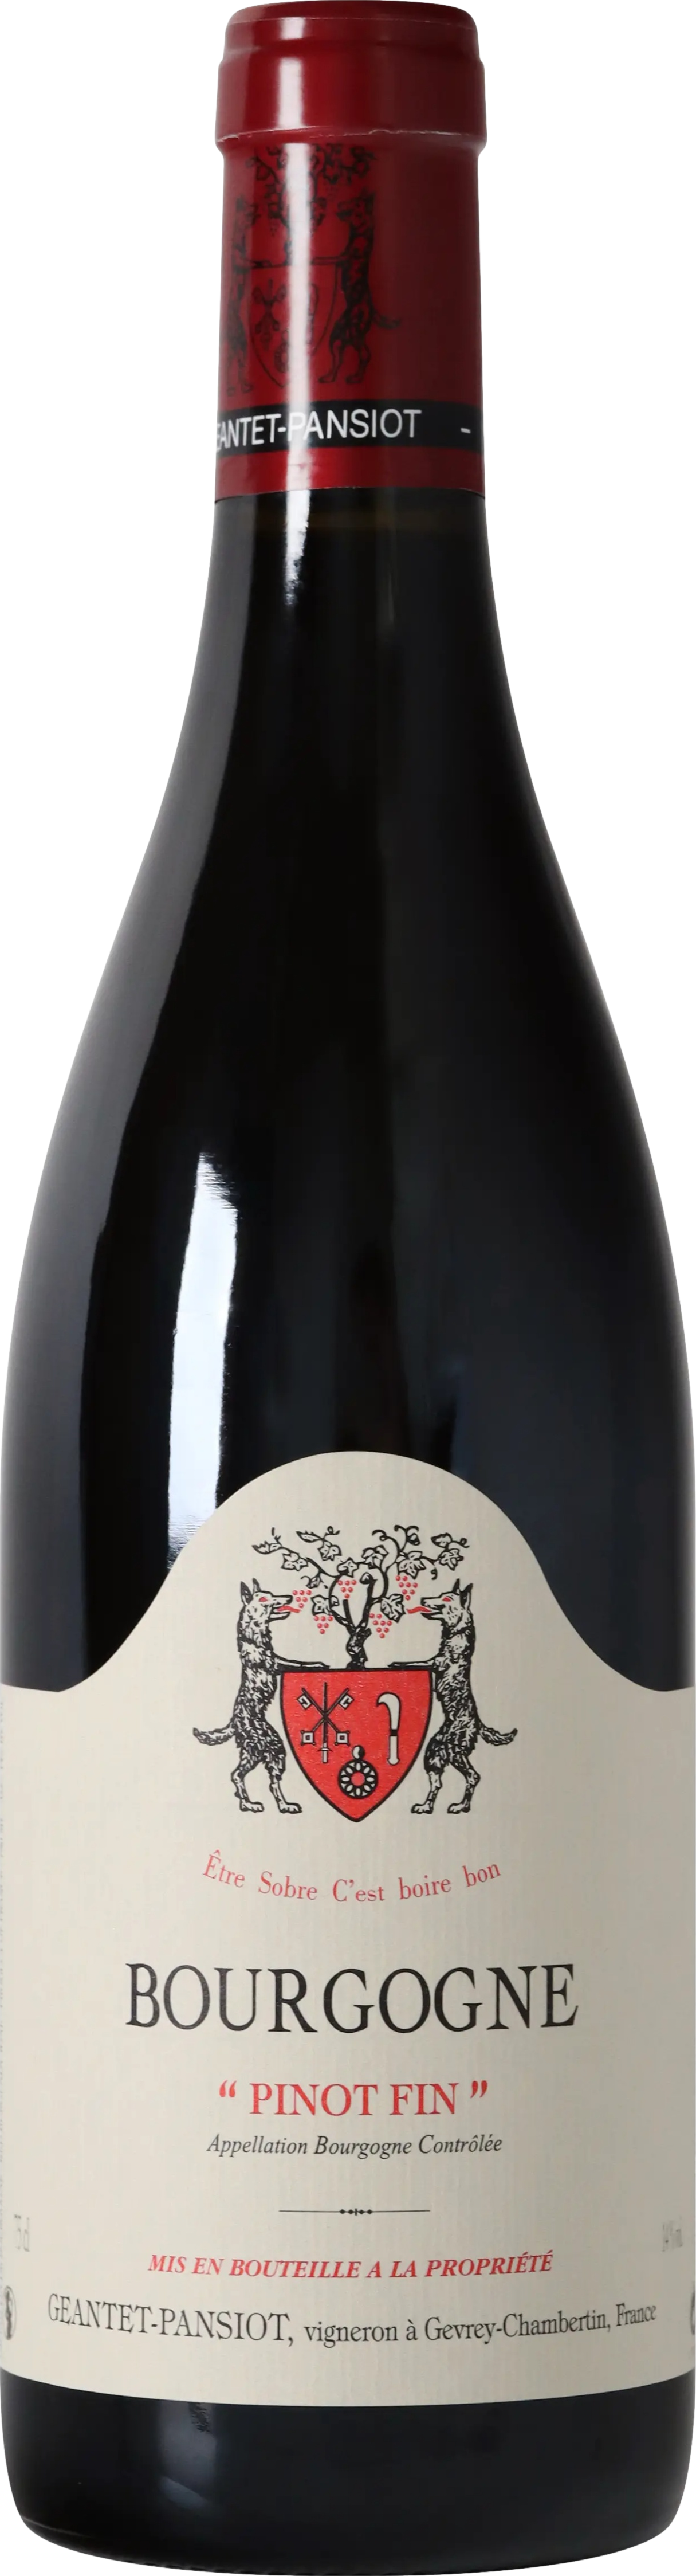 Geantet-Pansiot Bourgogne Pinot Fin 2021 Červené 13.0% 0.75 l